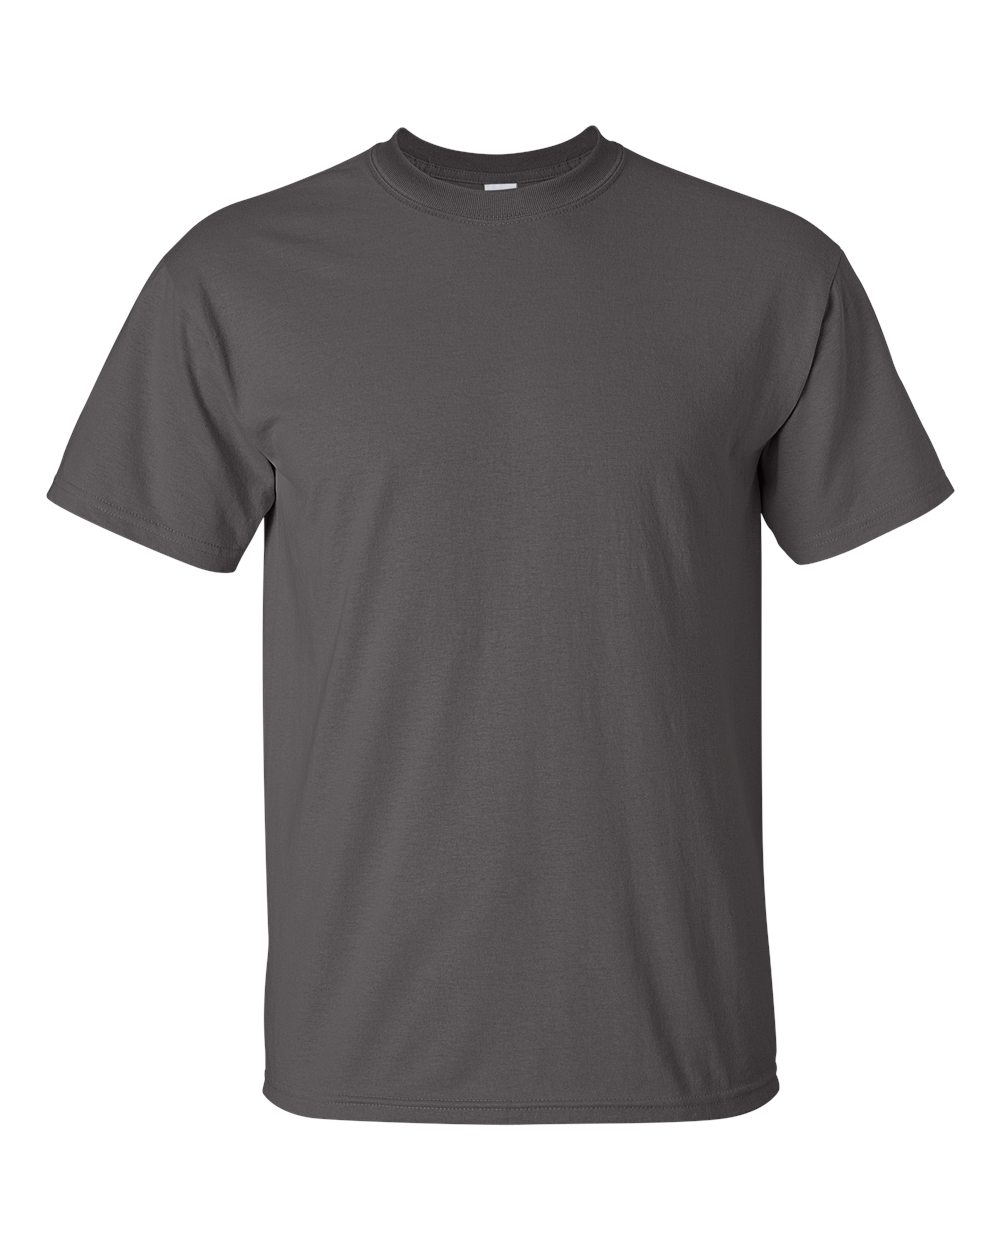 Blank Dark Grey T-shirt - Basic tees shop